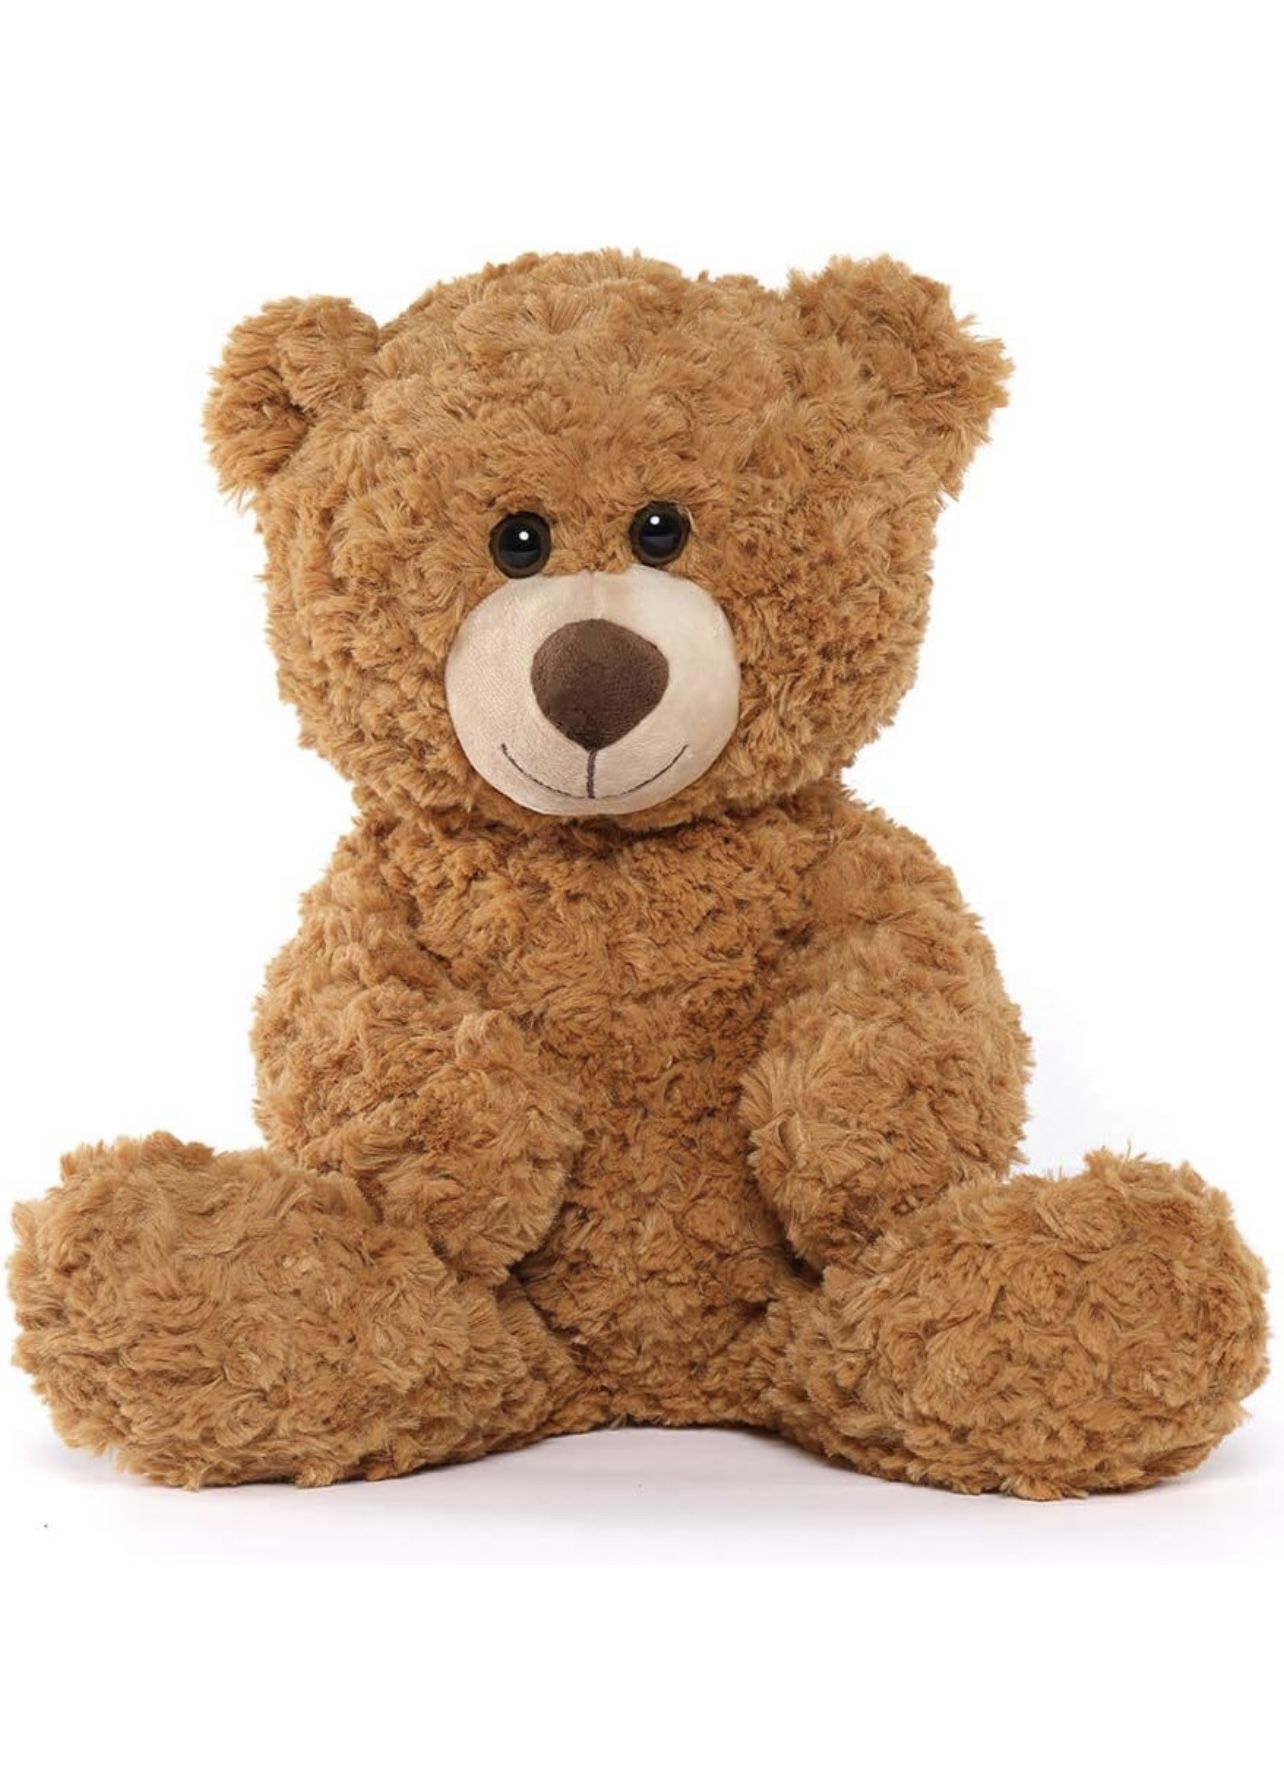 Teddy Bear Stuffed Animals 18inch